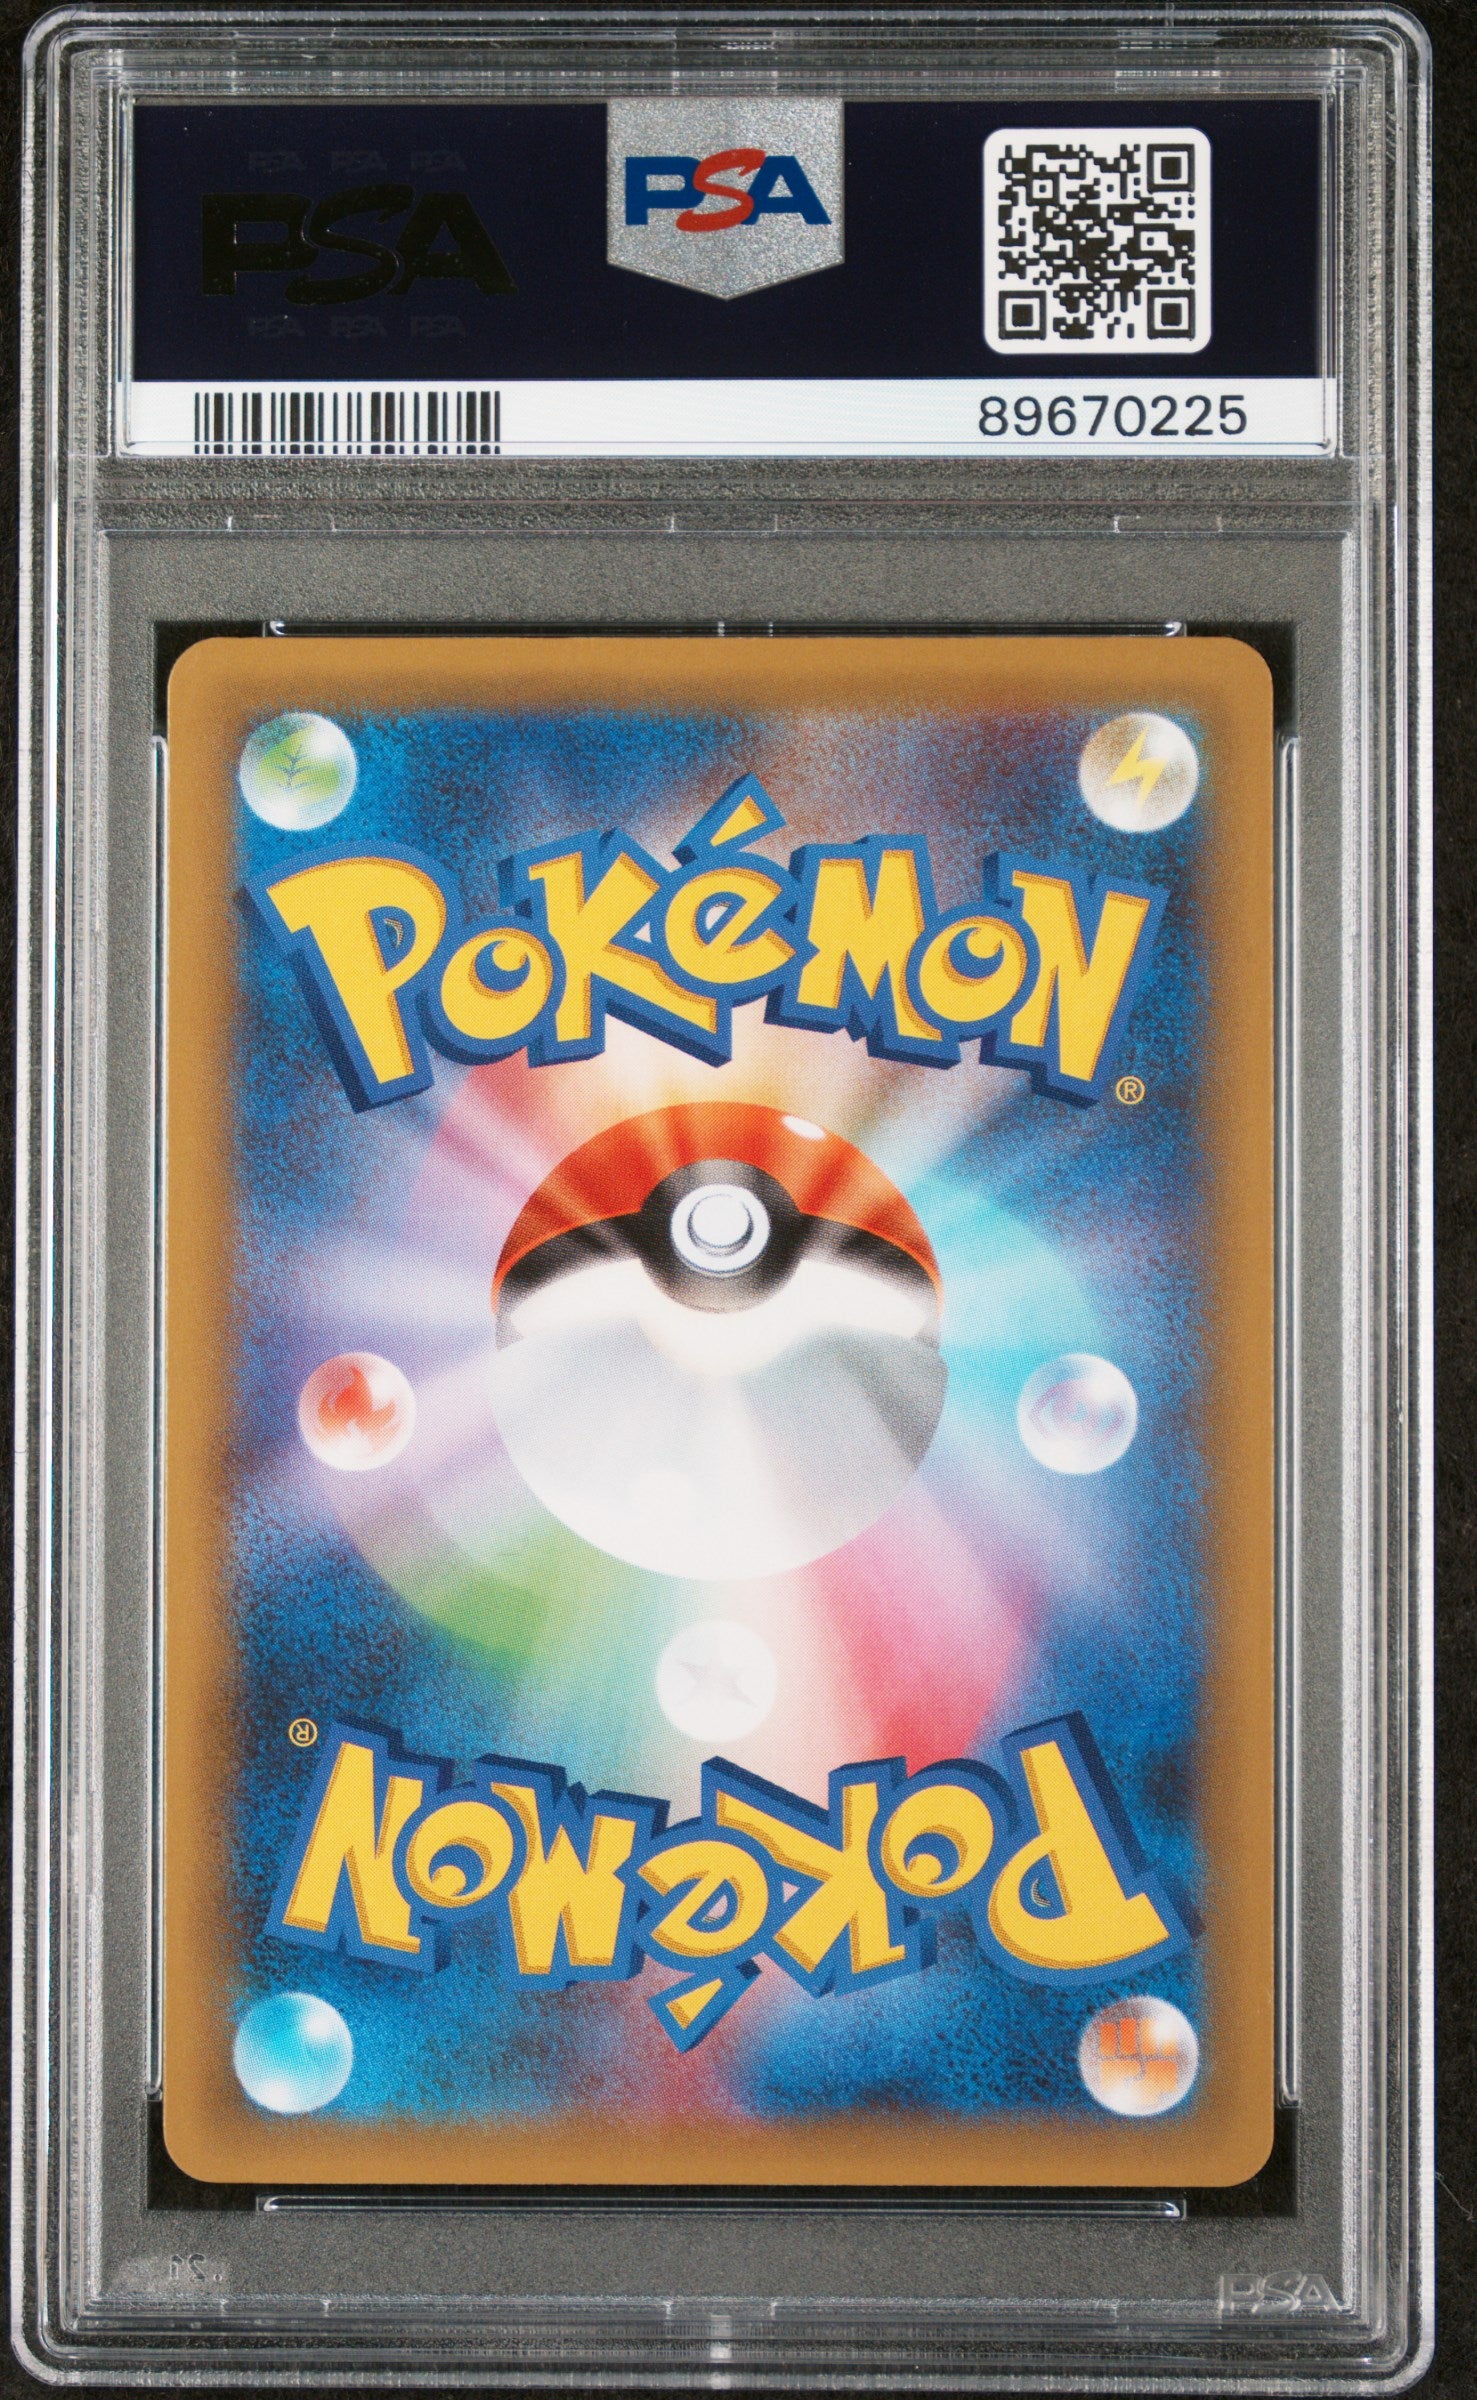 Pokémon Japanese - Garchomp C LV.X s8a-P 25th Anniversary 018/025 (Classic Collection) - PSA 10 (GEM MINT)